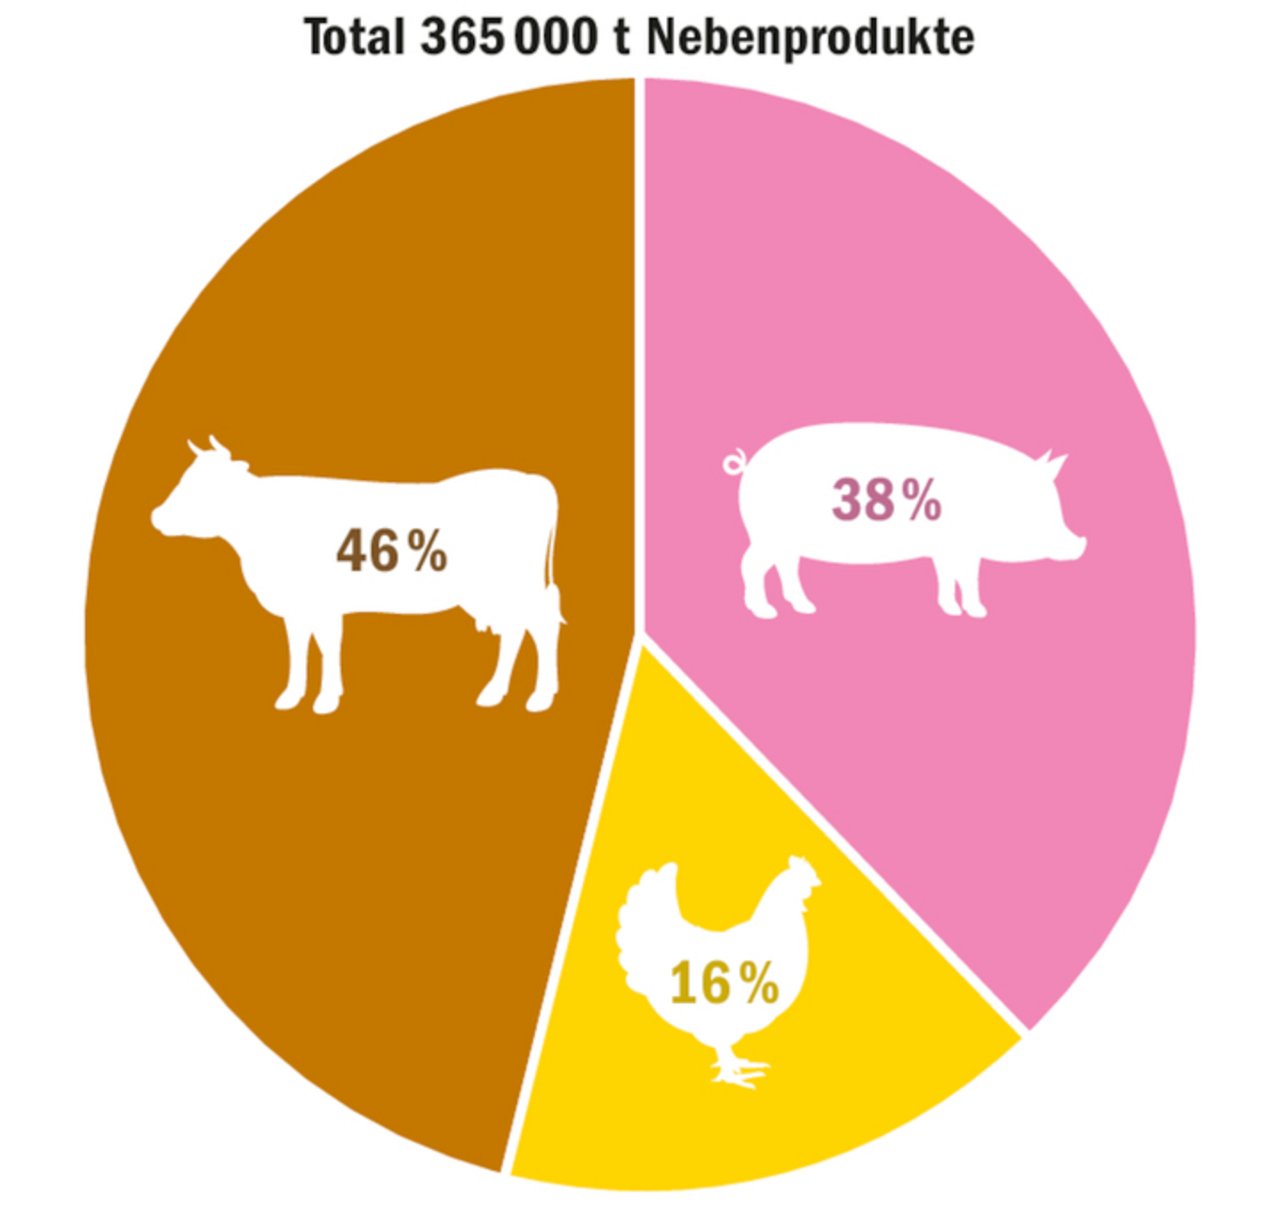 Knapp die Hälfte der Nebenprodukte aus der Lebensmittel-produktion landen in der Rindviehkrippe.